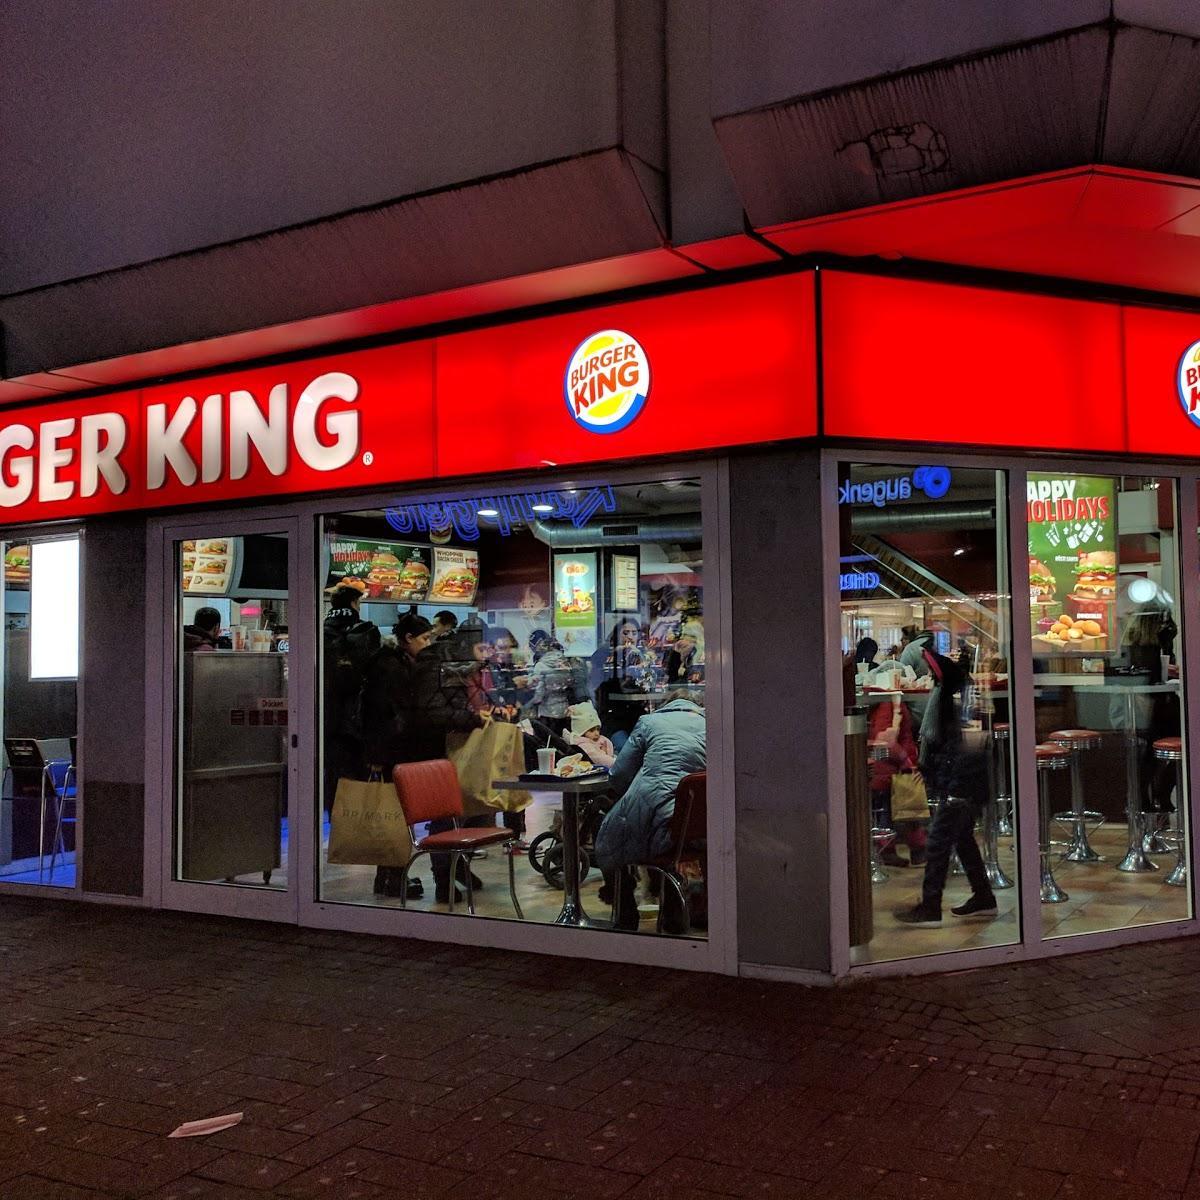 Restaurant "Burger King" in Köln